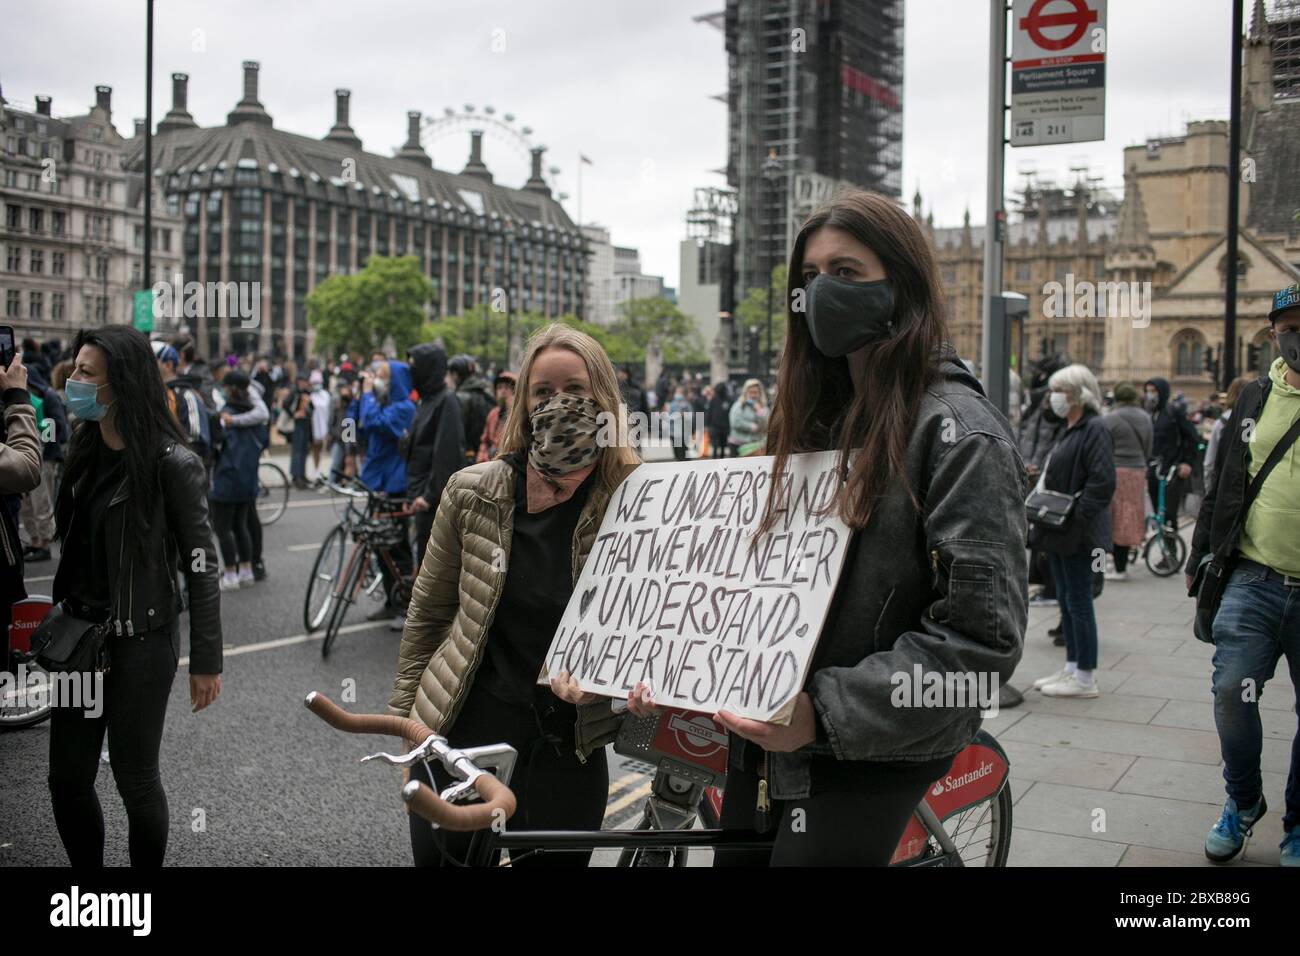 Zwei junge weiße Frauen posieren mit einem Plakat, um Solidarität mit der Bewegung Black Lives Matter bei der antirassistischen Kundgebung im Zentrum von London, Großbritannien, zu zeigen. Stockfoto